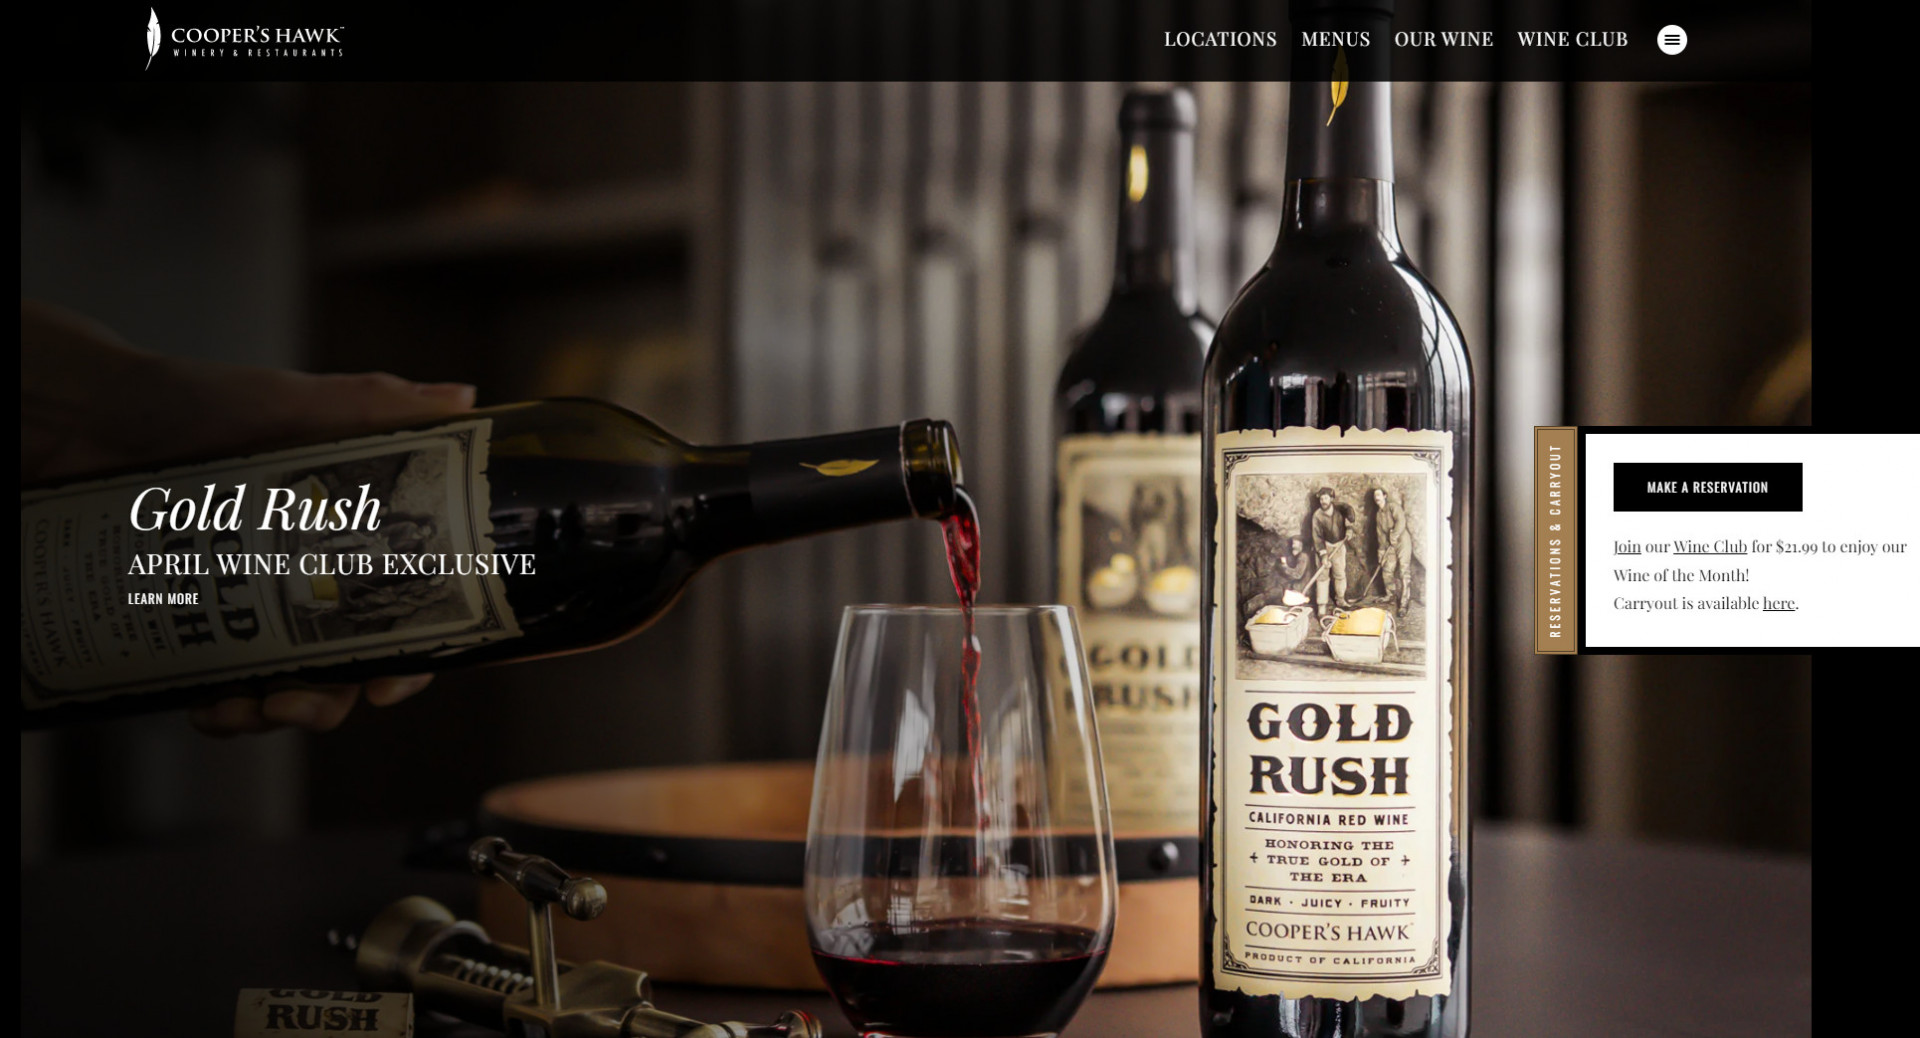 A restaurant website design for restaurants that offer wine tasting